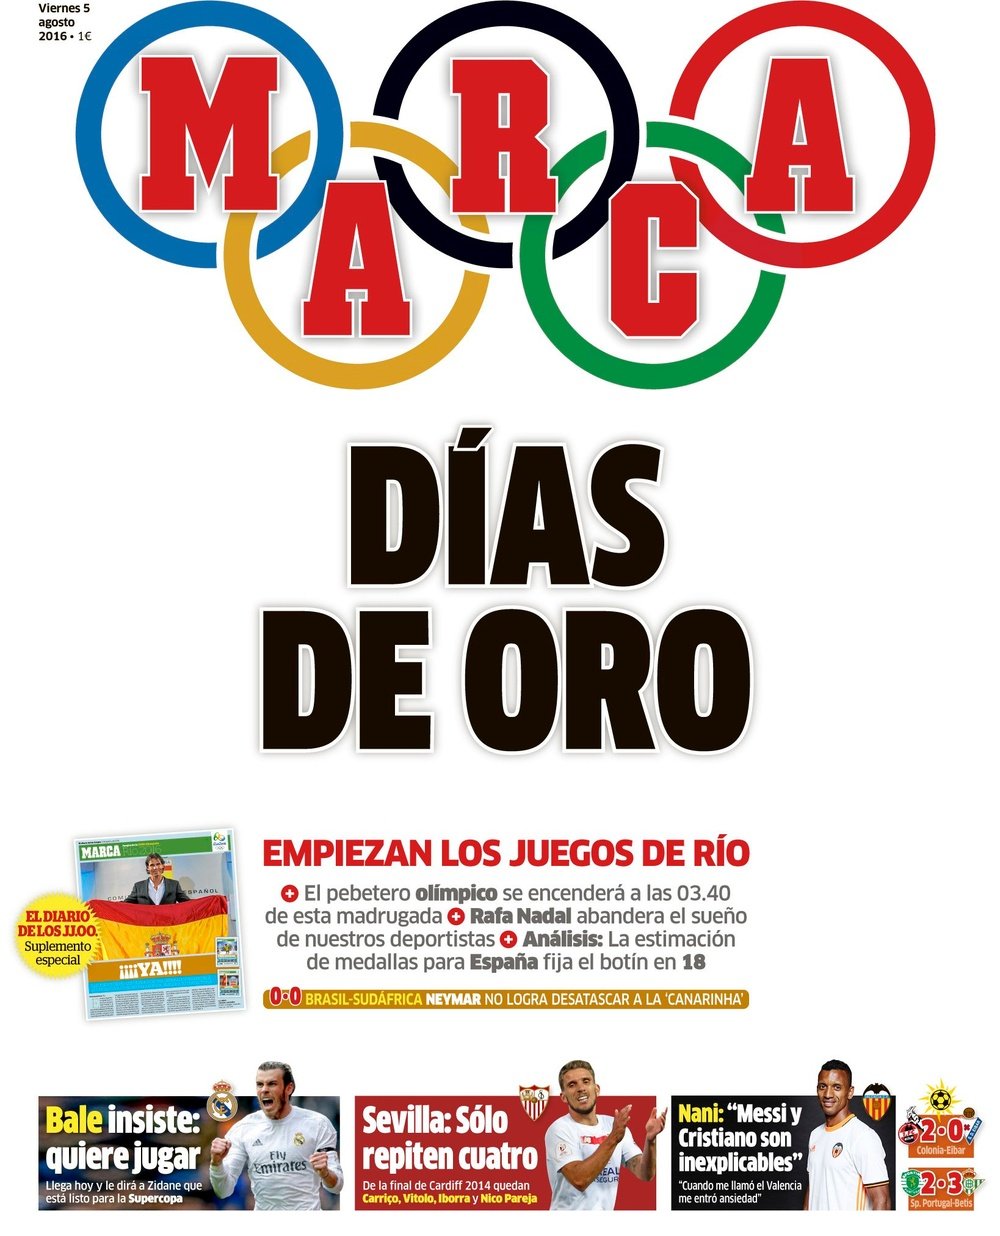 La couverture de MARCA du 05-08-16. MARCA